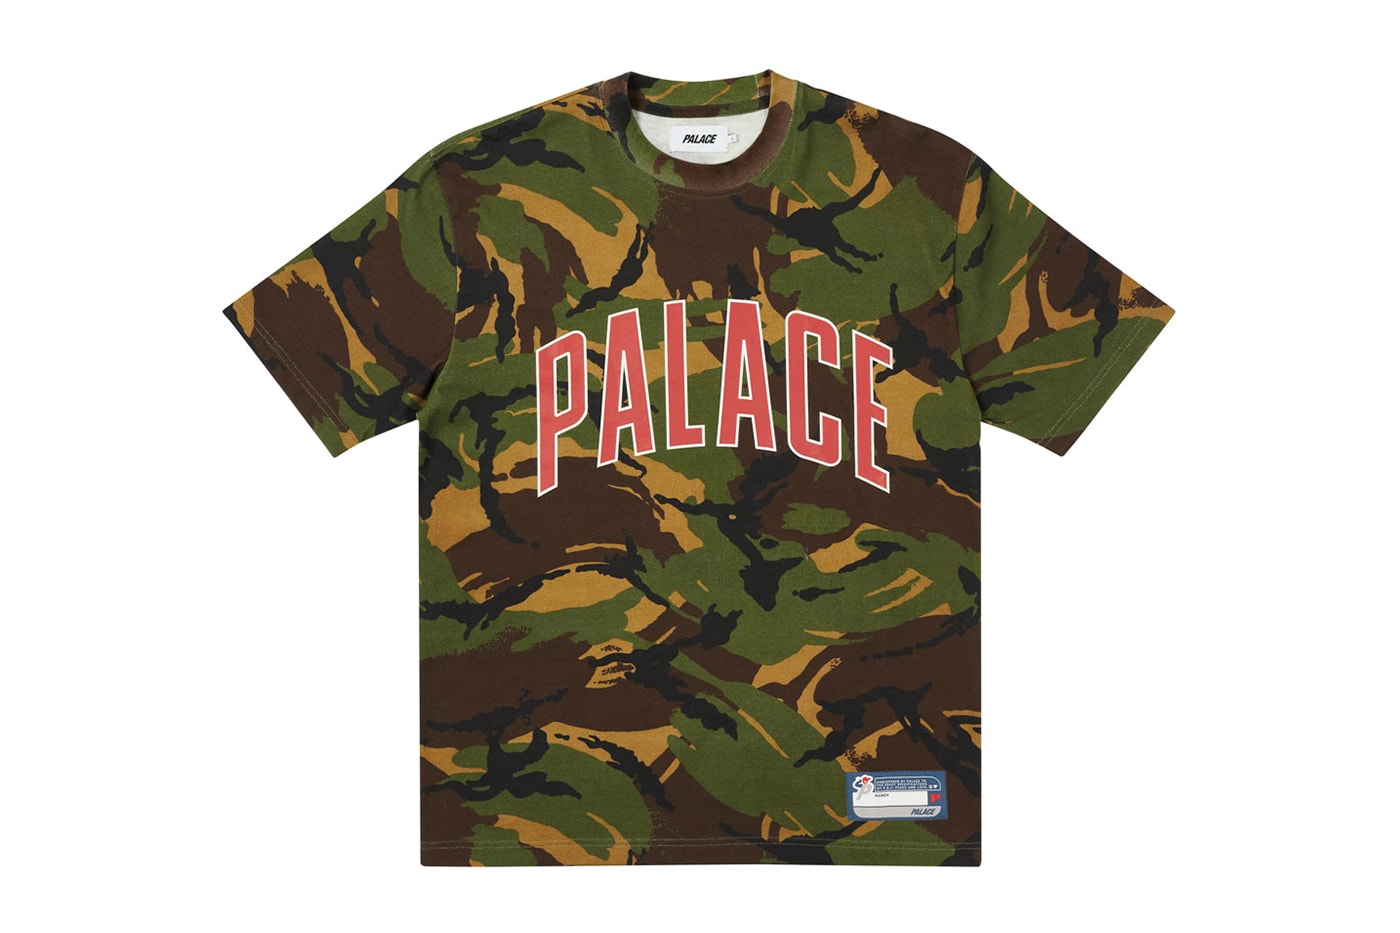 Palace Summer 2021 Tshirts Tees Longsleeves Shirts Tops